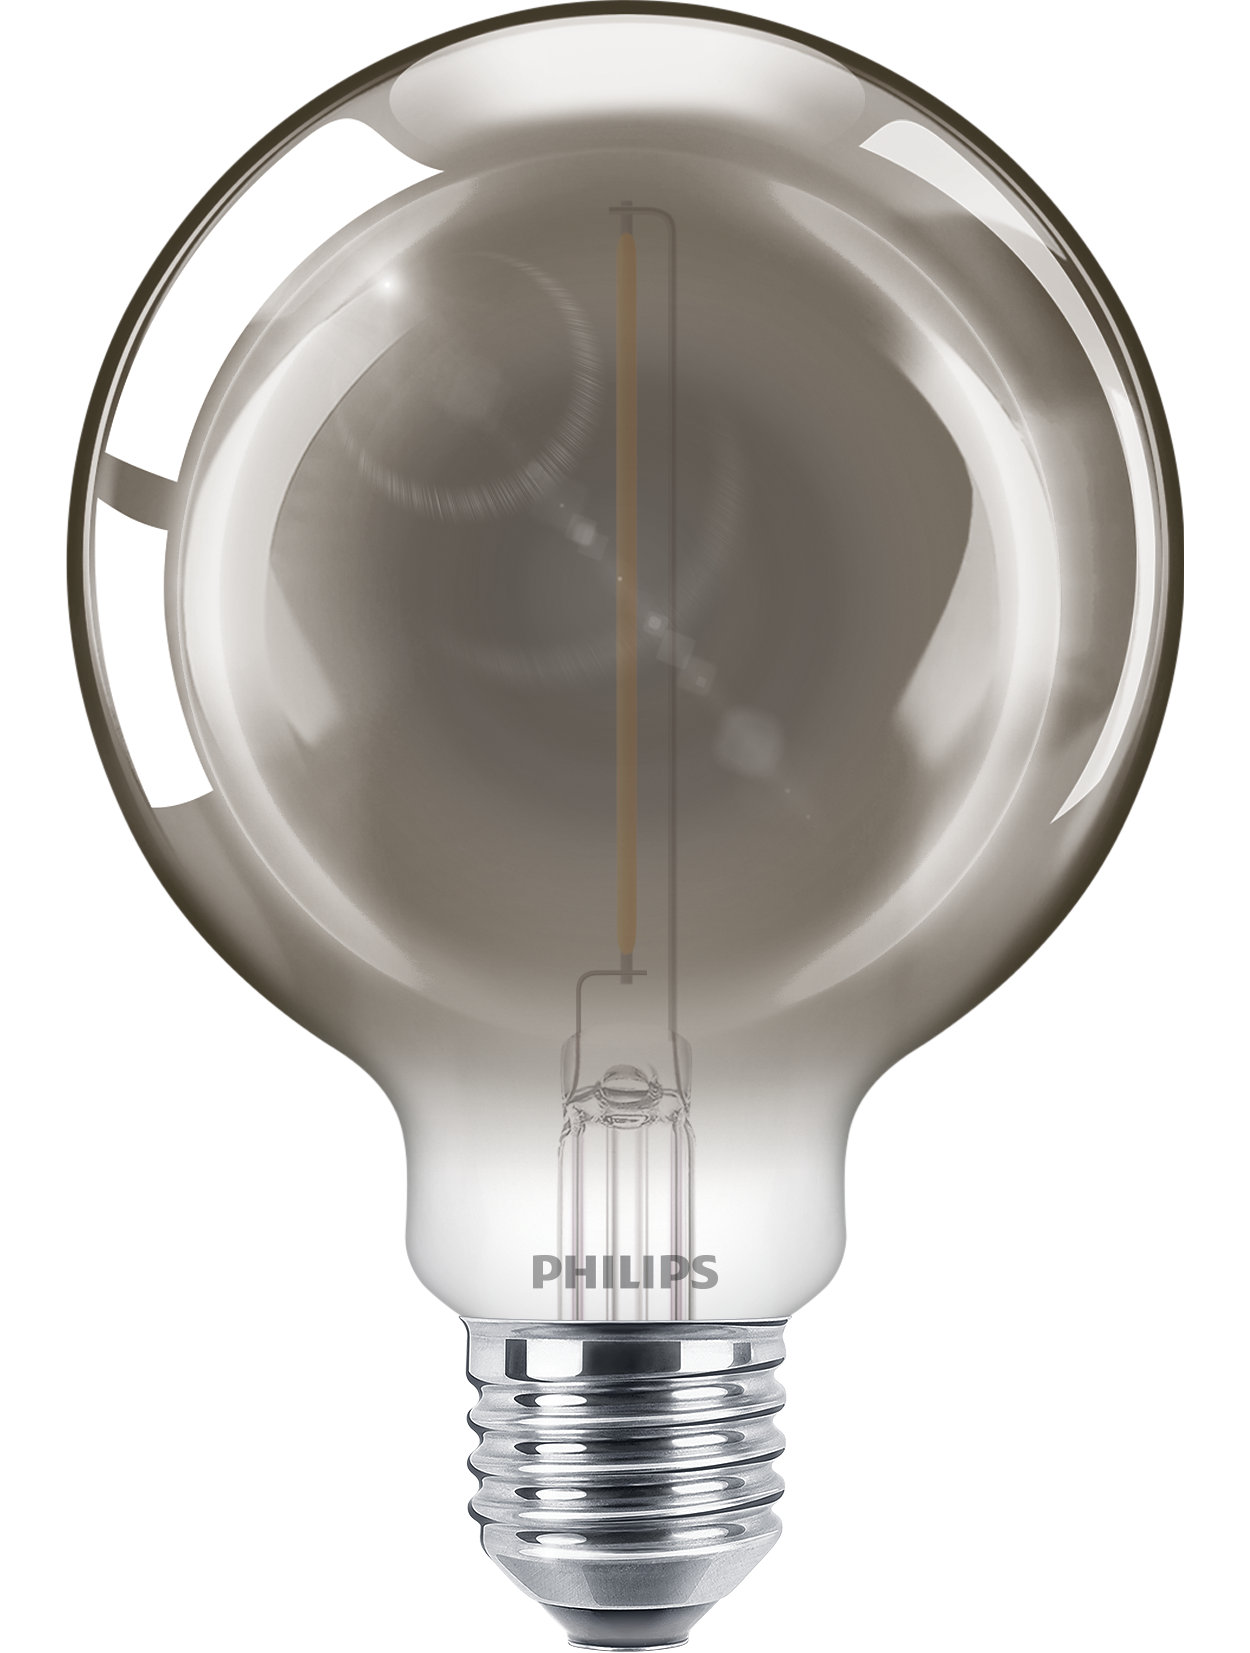 Κλασικοί λαμπτήρες LEDbulb για διακοσμητικό φωτισμό